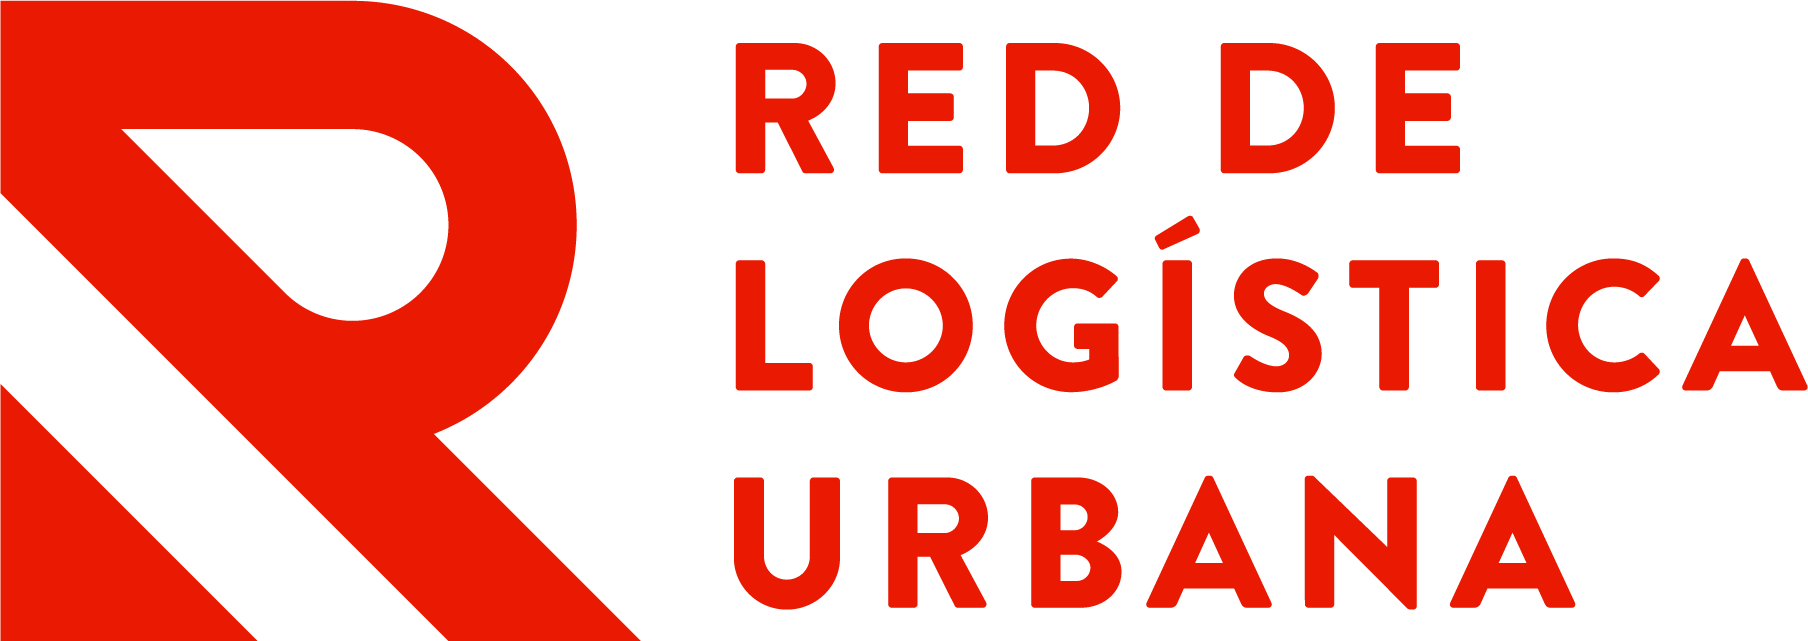 Red de Logística Urbana (RLU)